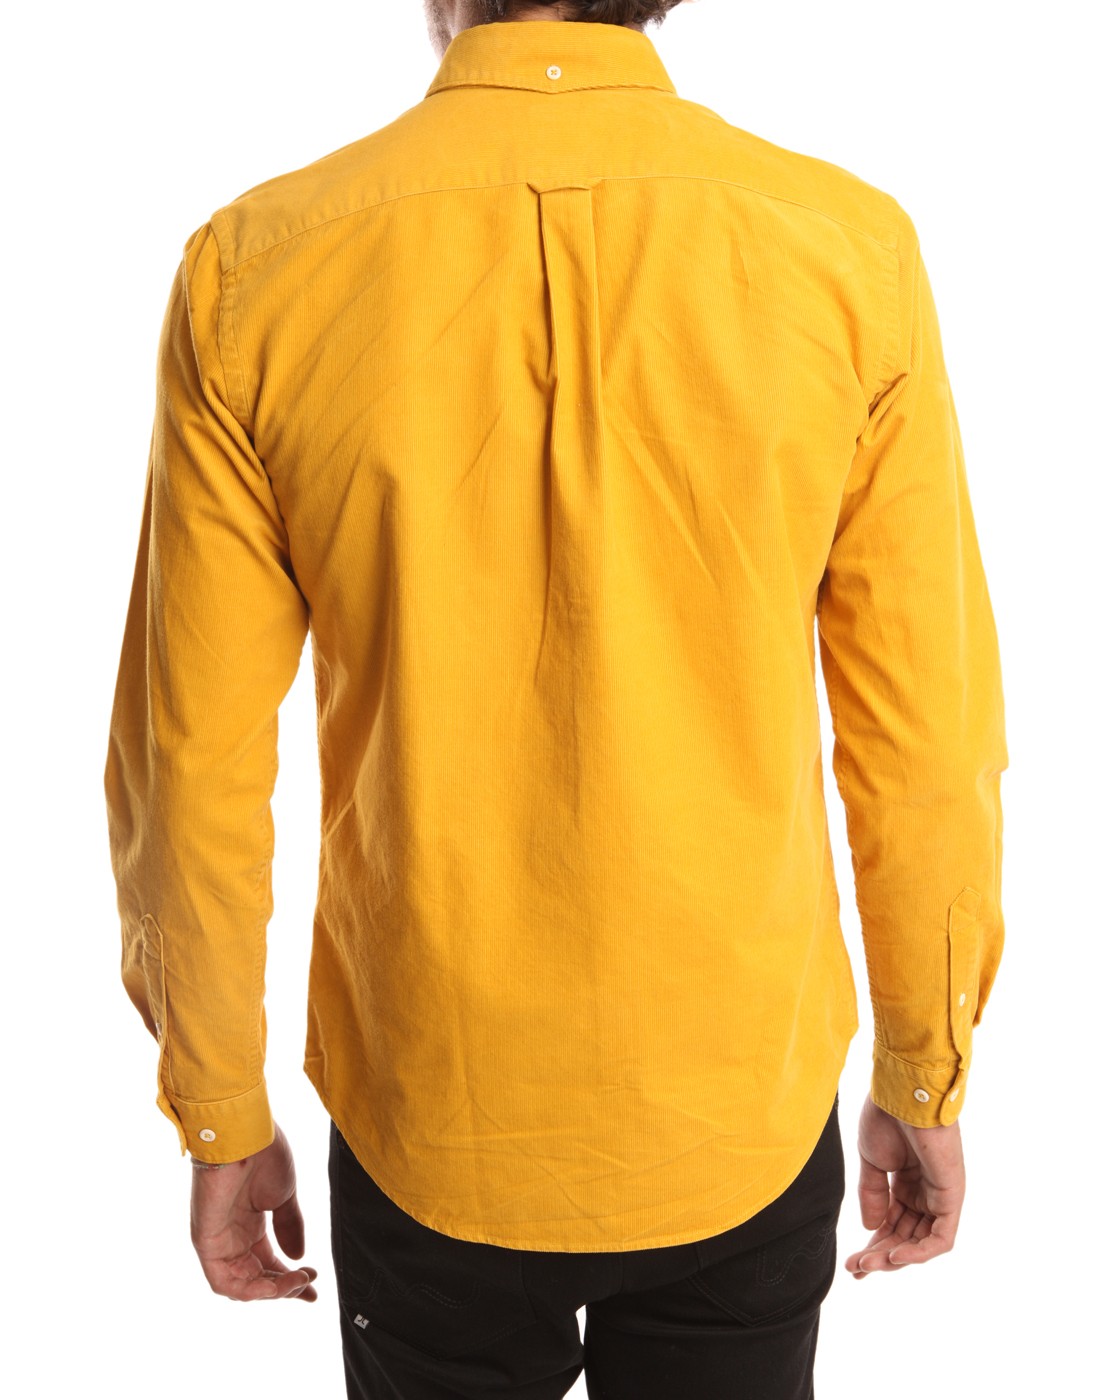 Molière et Moi: Lacoste Yellow Shirt